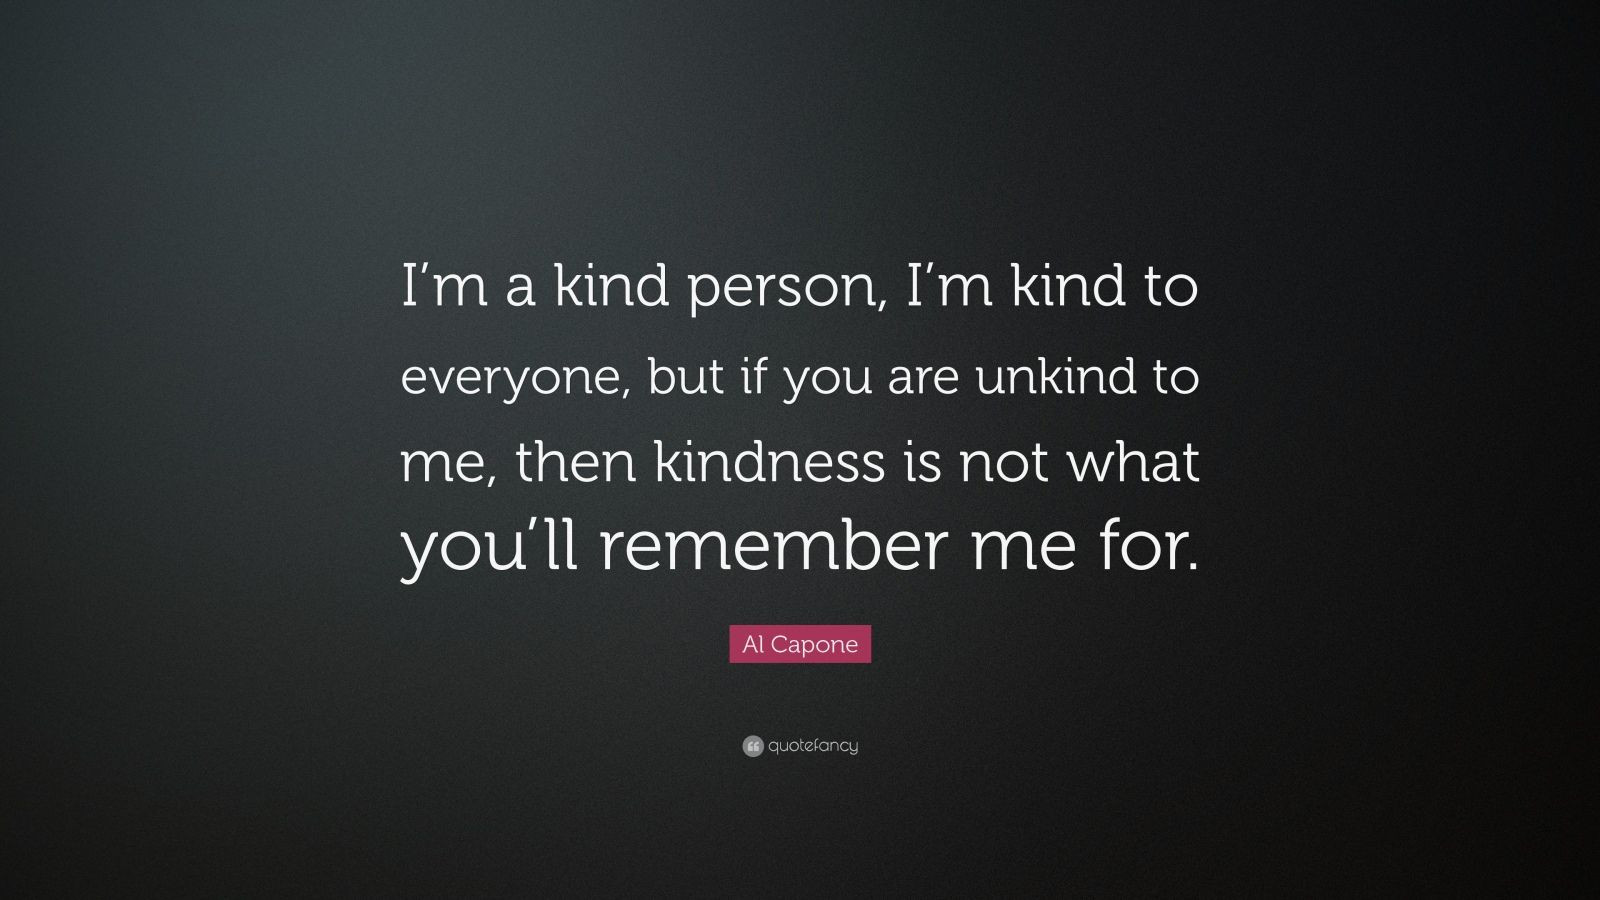 Al Capone Quotes Kindness
 Al Capone Quote “I’m a kind person I’m kind to everyone